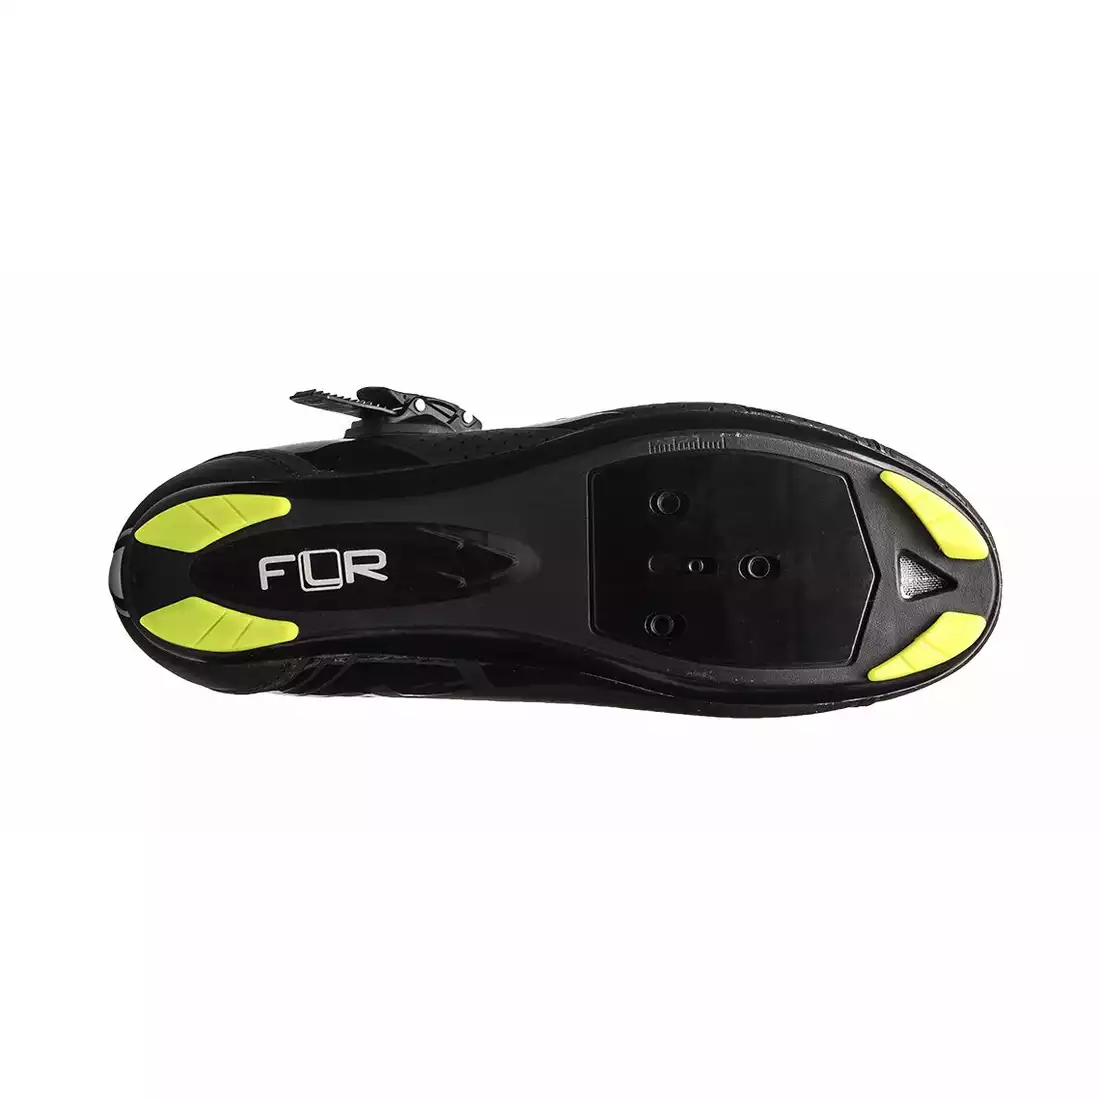 FLR F-15 szosowe buty rowerowe czarno-fluorowe